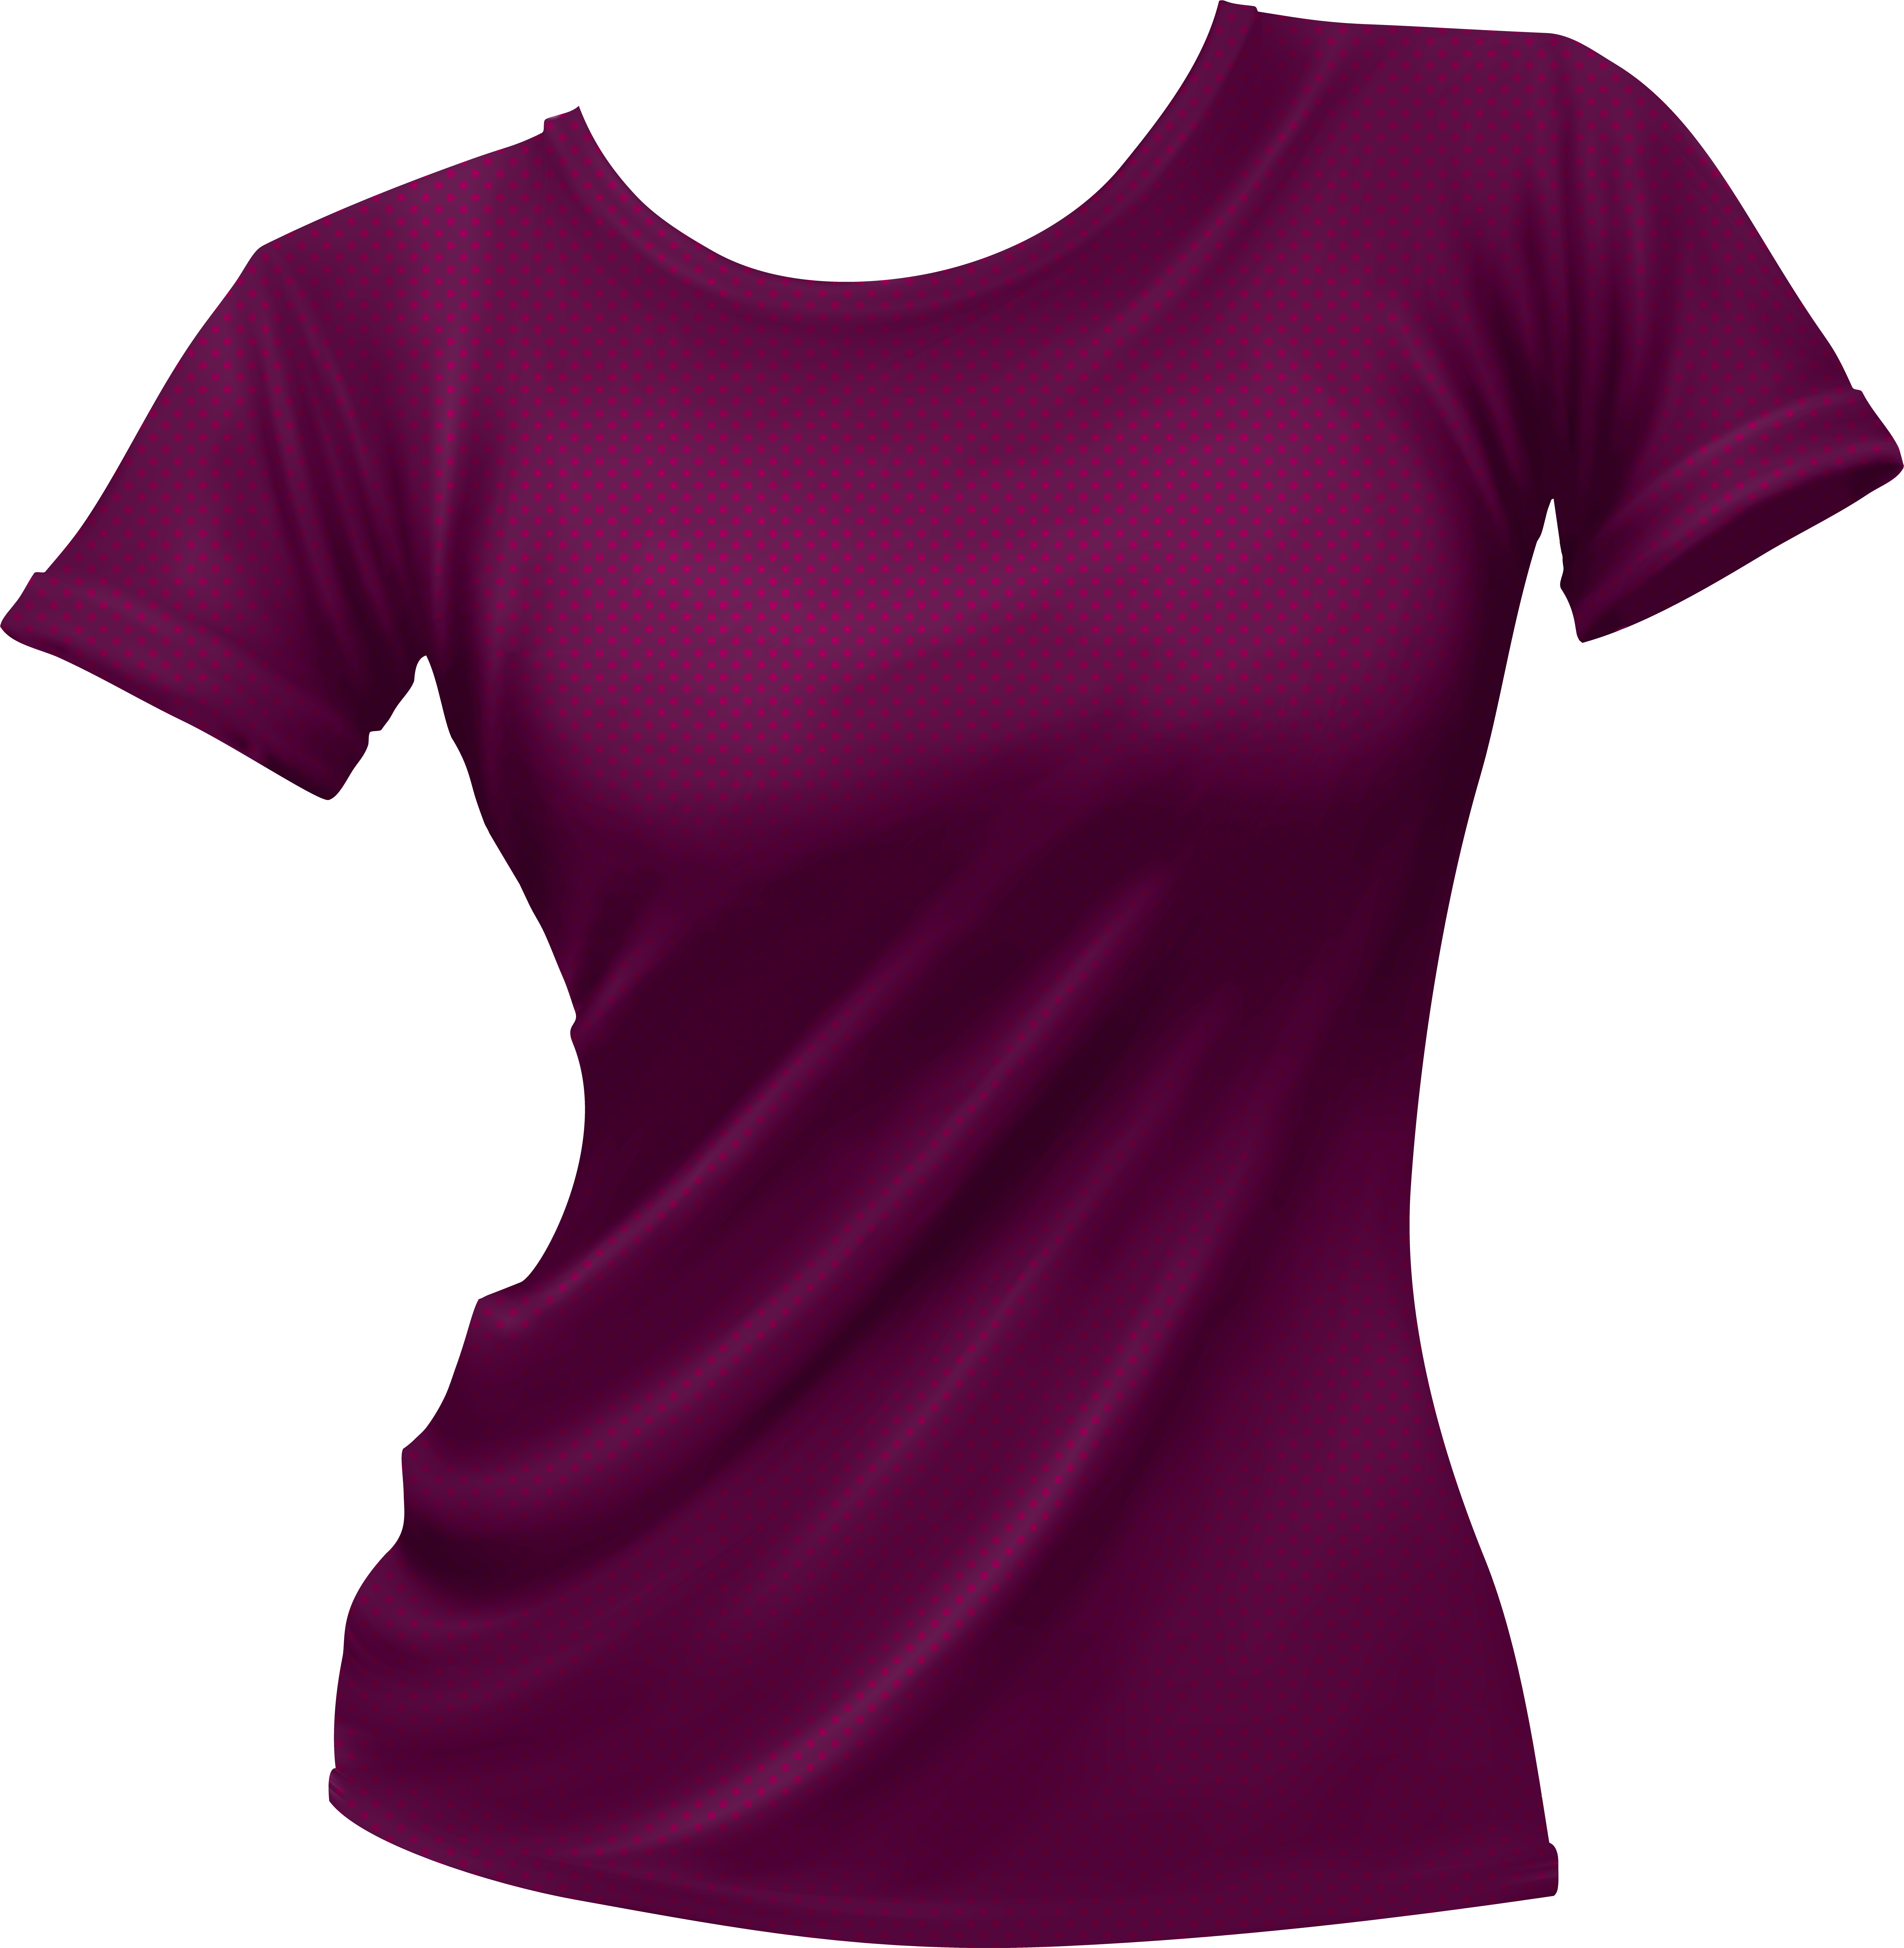 Картинка одежды на прозрачном фоне. Футболка женская. Фиолетовая футболка. Женская футболка для фотошопа. Майка женская.